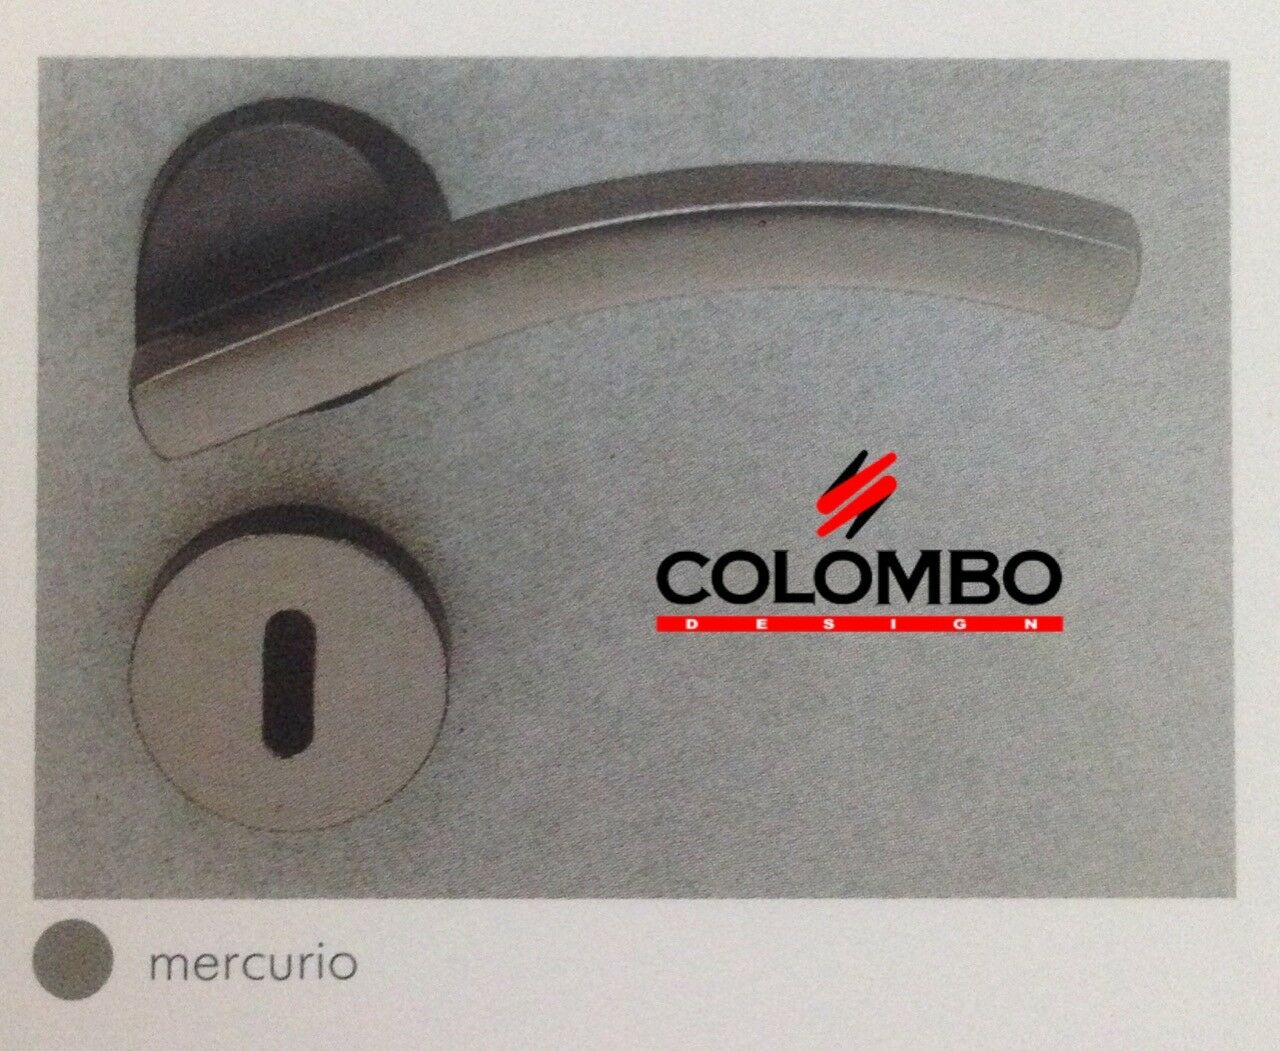 MANIGLIA PER PORTA COLOMBO DESIGN THEO DB11R MERCURIO design DI BLASI